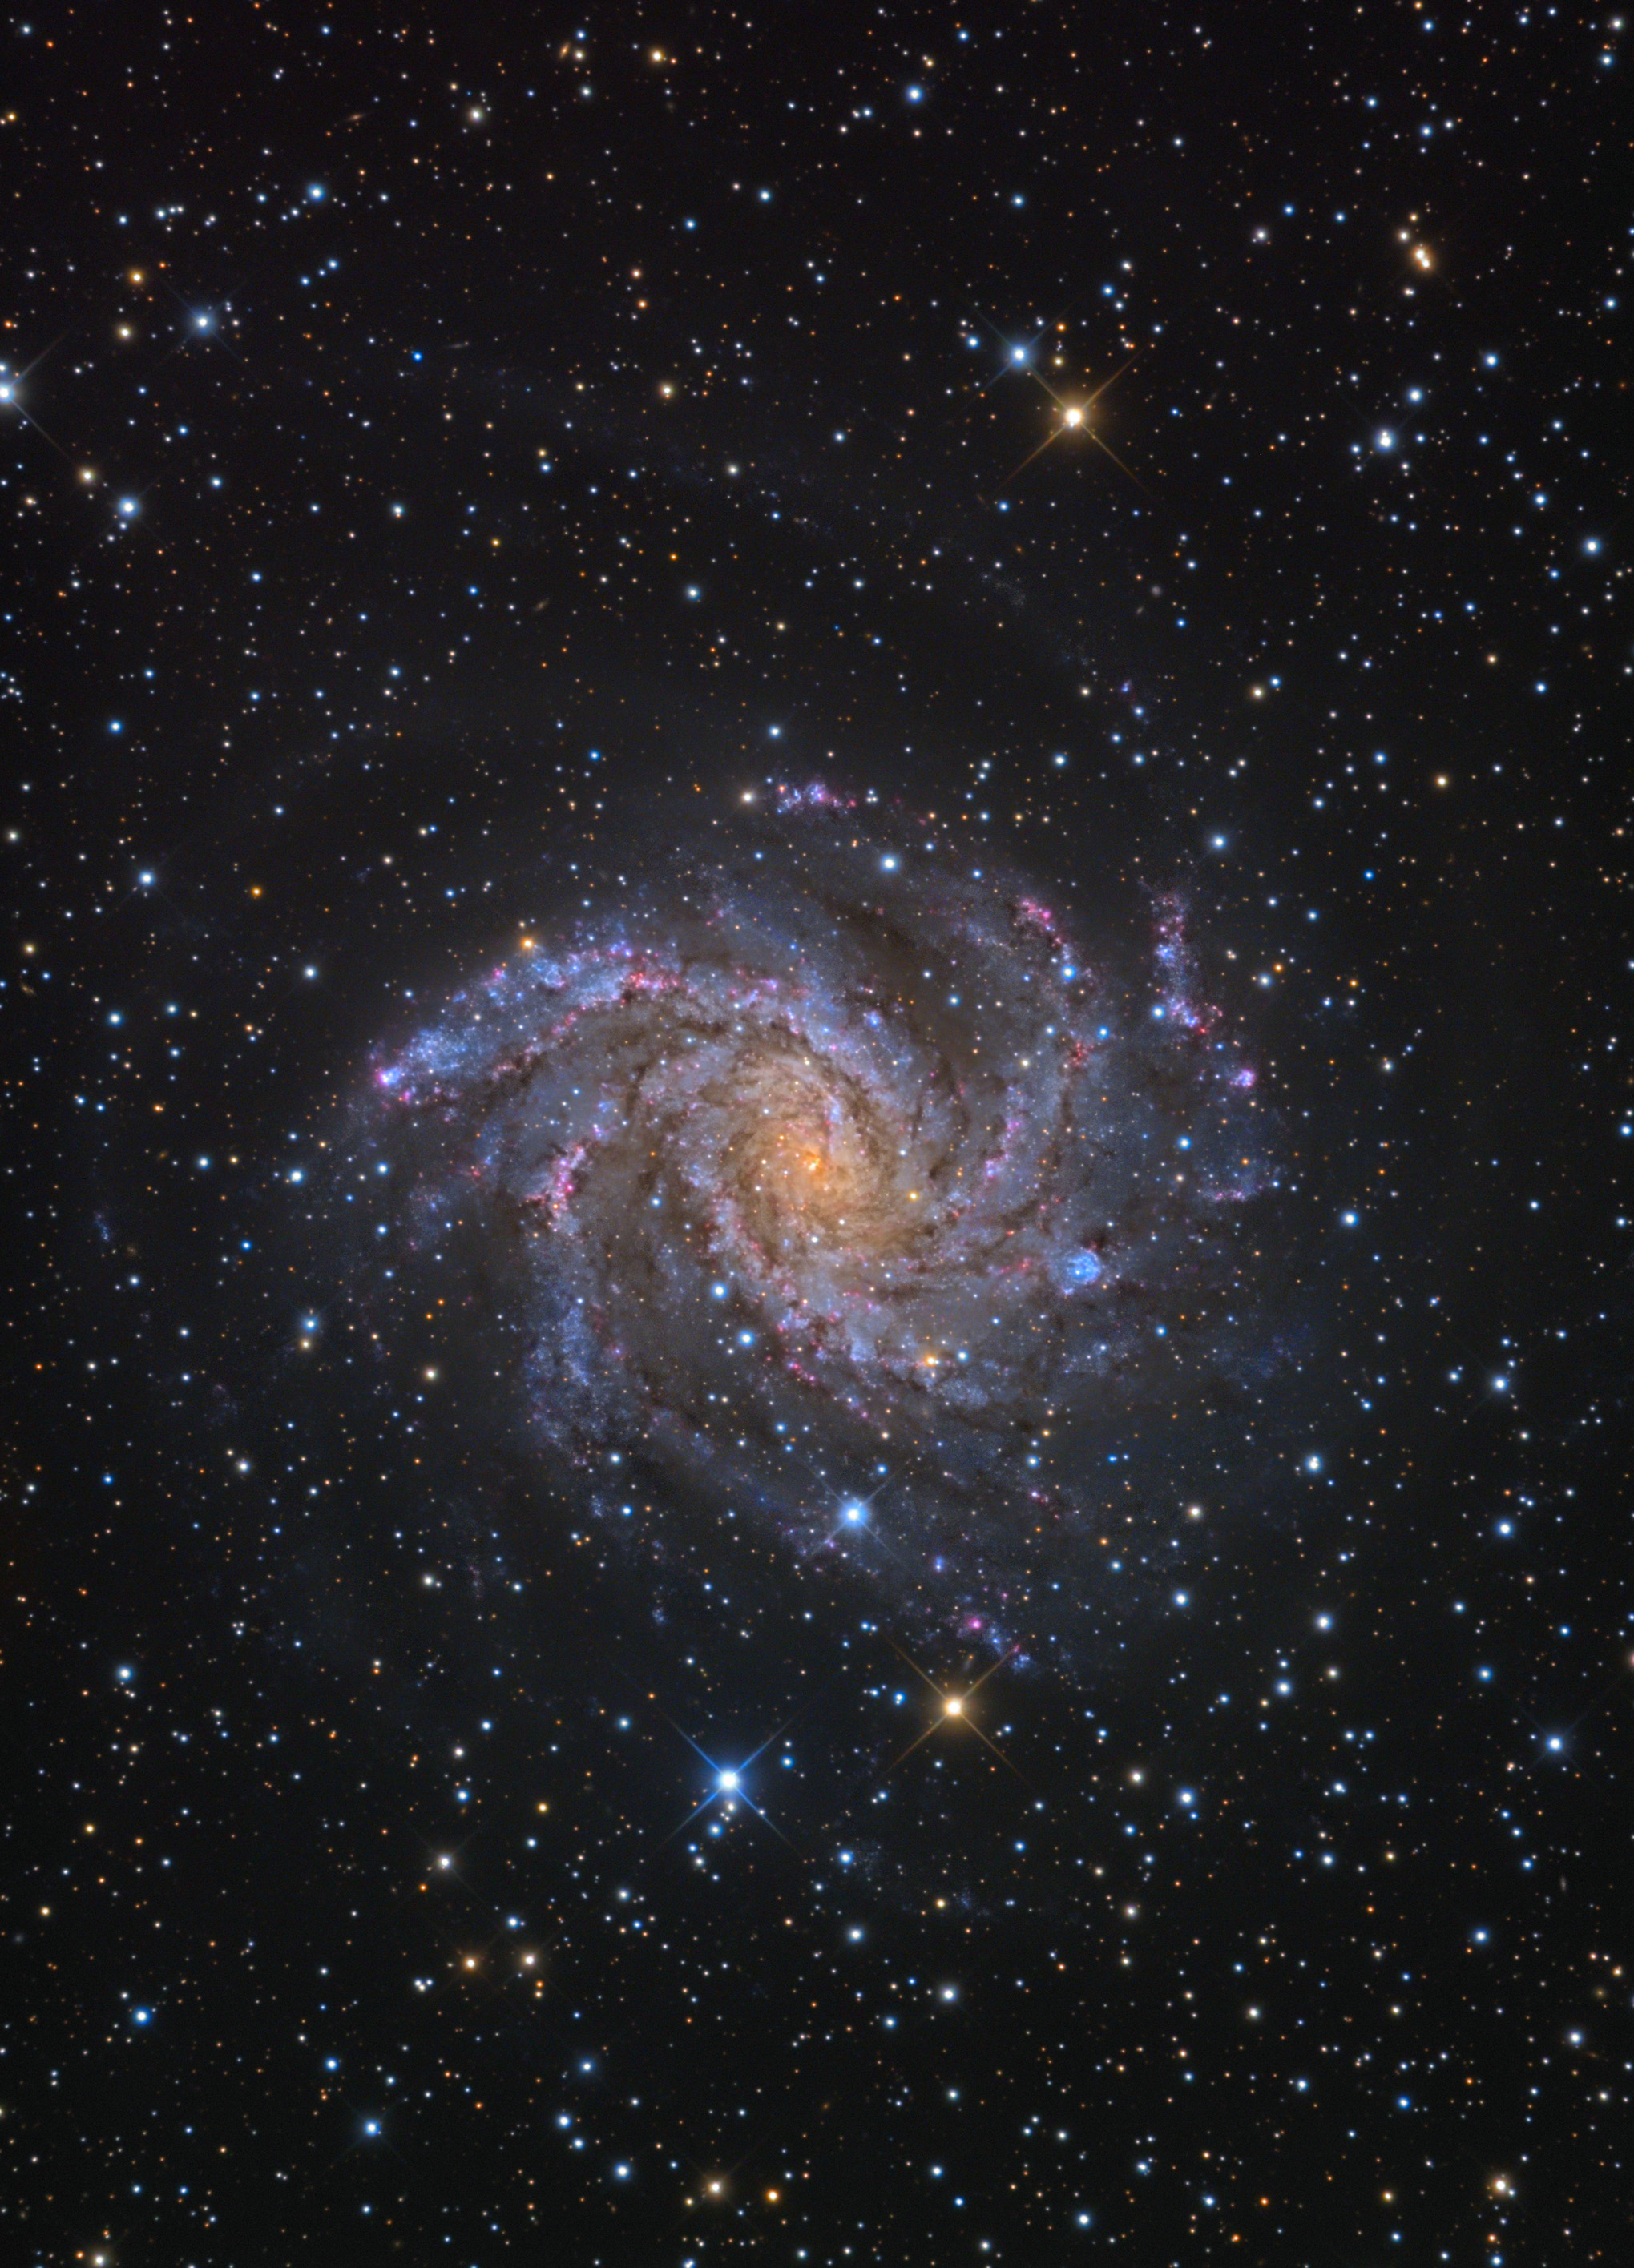 NGC 6946:  